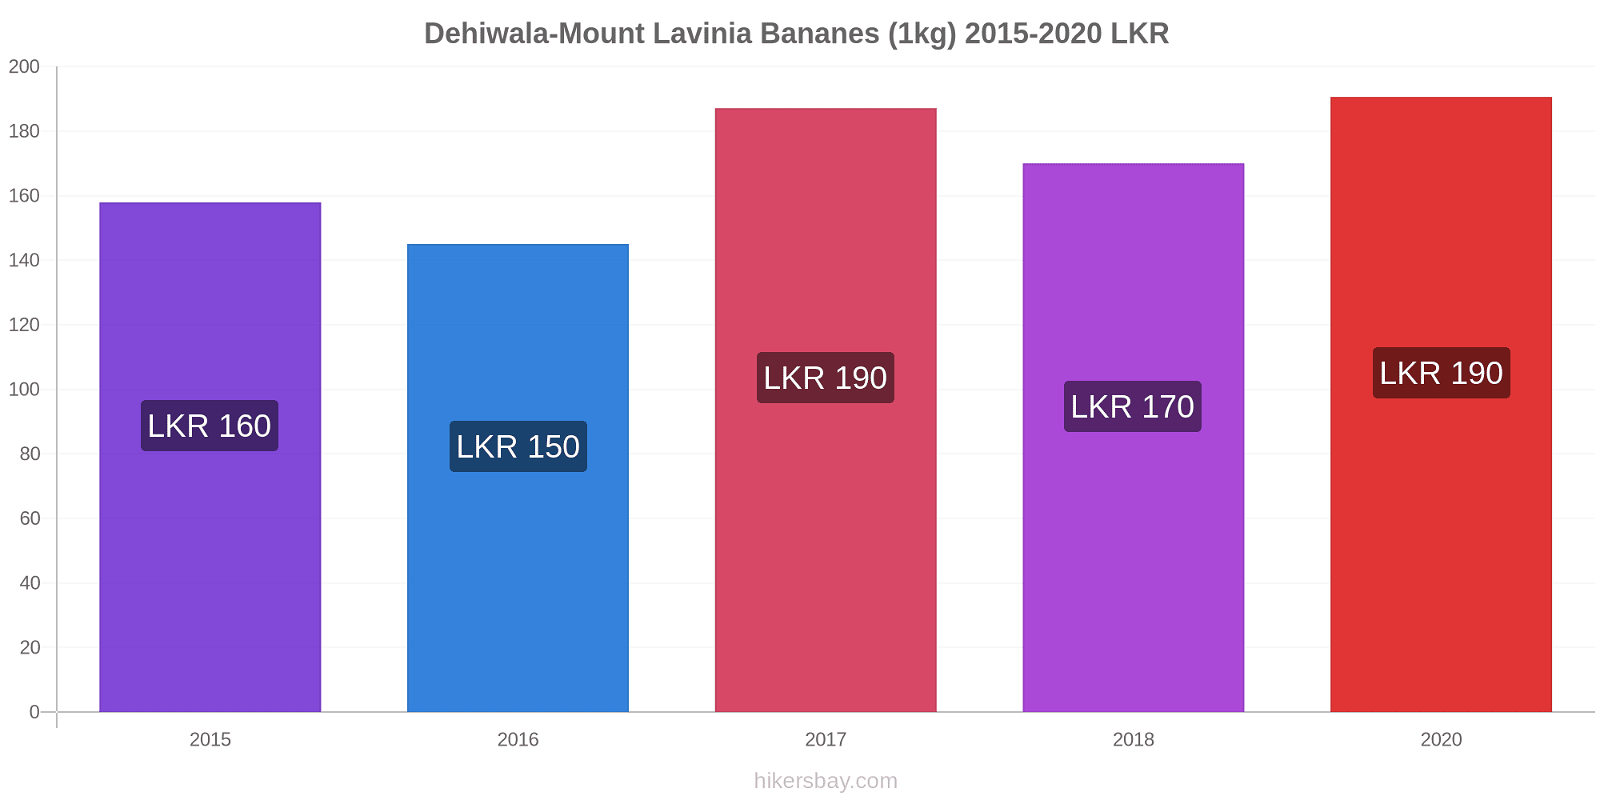 Dehiwala-Mount Lavinia changements de prix Bananes (1kg) hikersbay.com